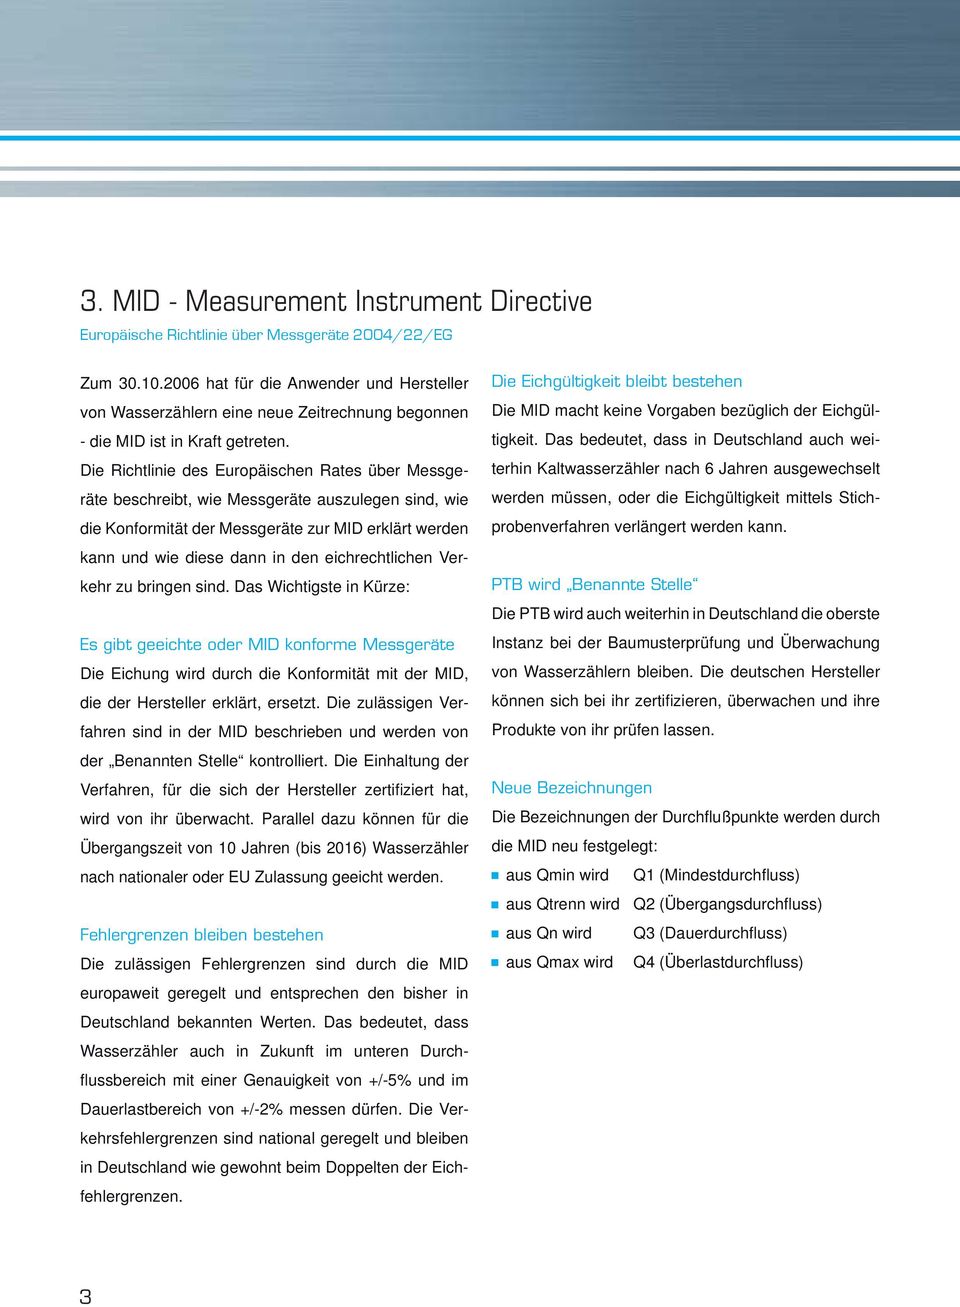 Die Richtlinie des Europäischen Rates über Messgeräte beschreibt, wie Messgeräte auszulegen sind, wie die Konformität der Messgeräte zur MID erklärt werden kann und wie diese dann in den